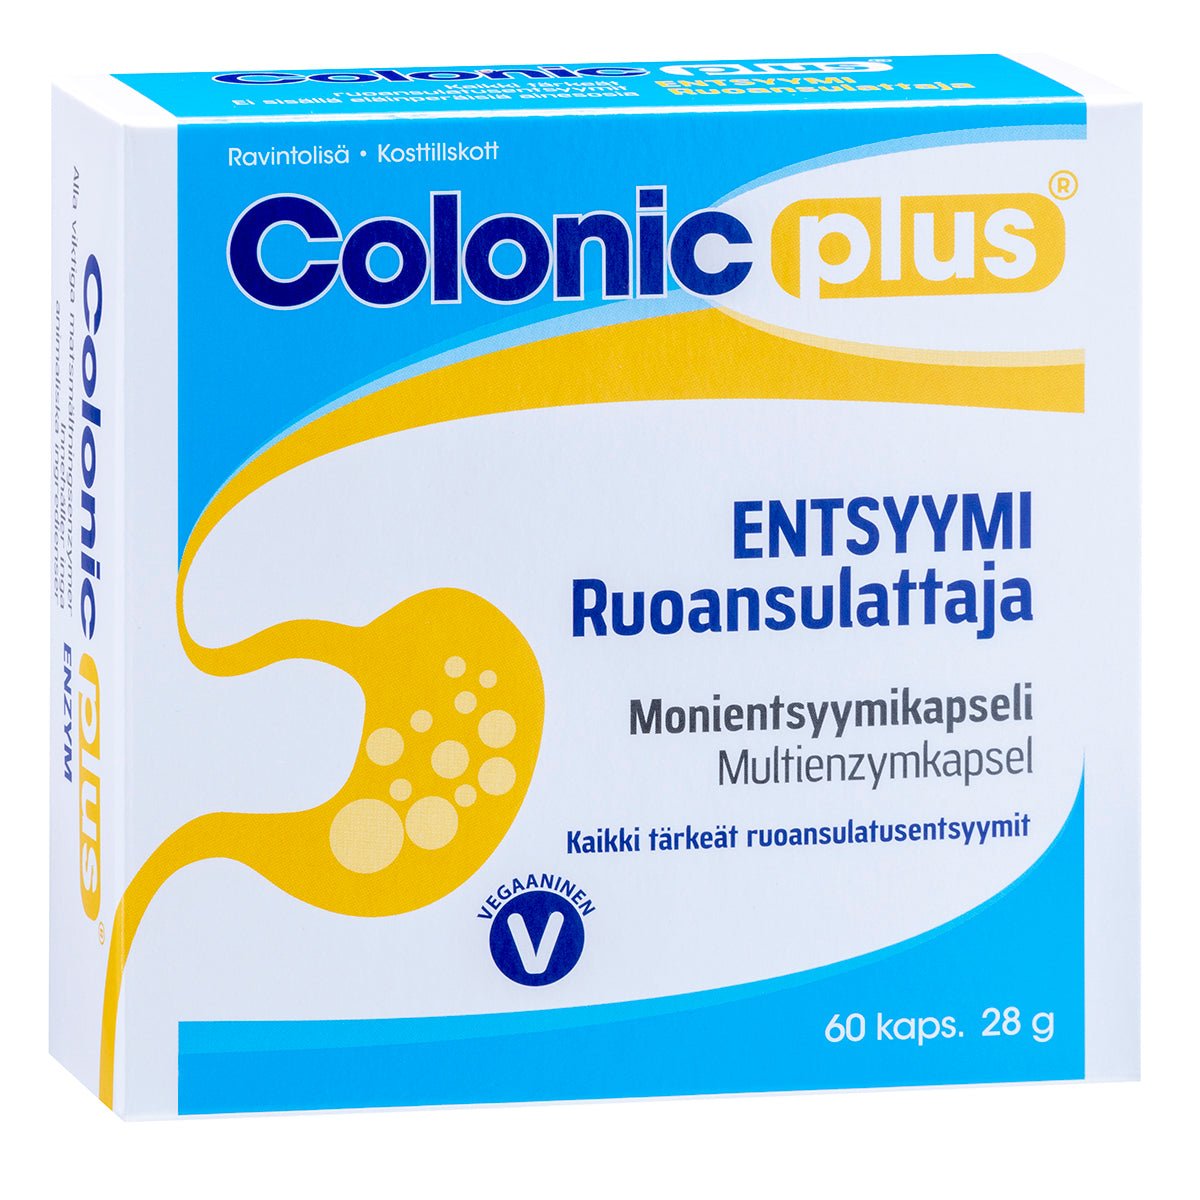 Hankintatukku Colonic plus® Entsyymi ruoansulattaja, 60 kaps Päiväysale!.